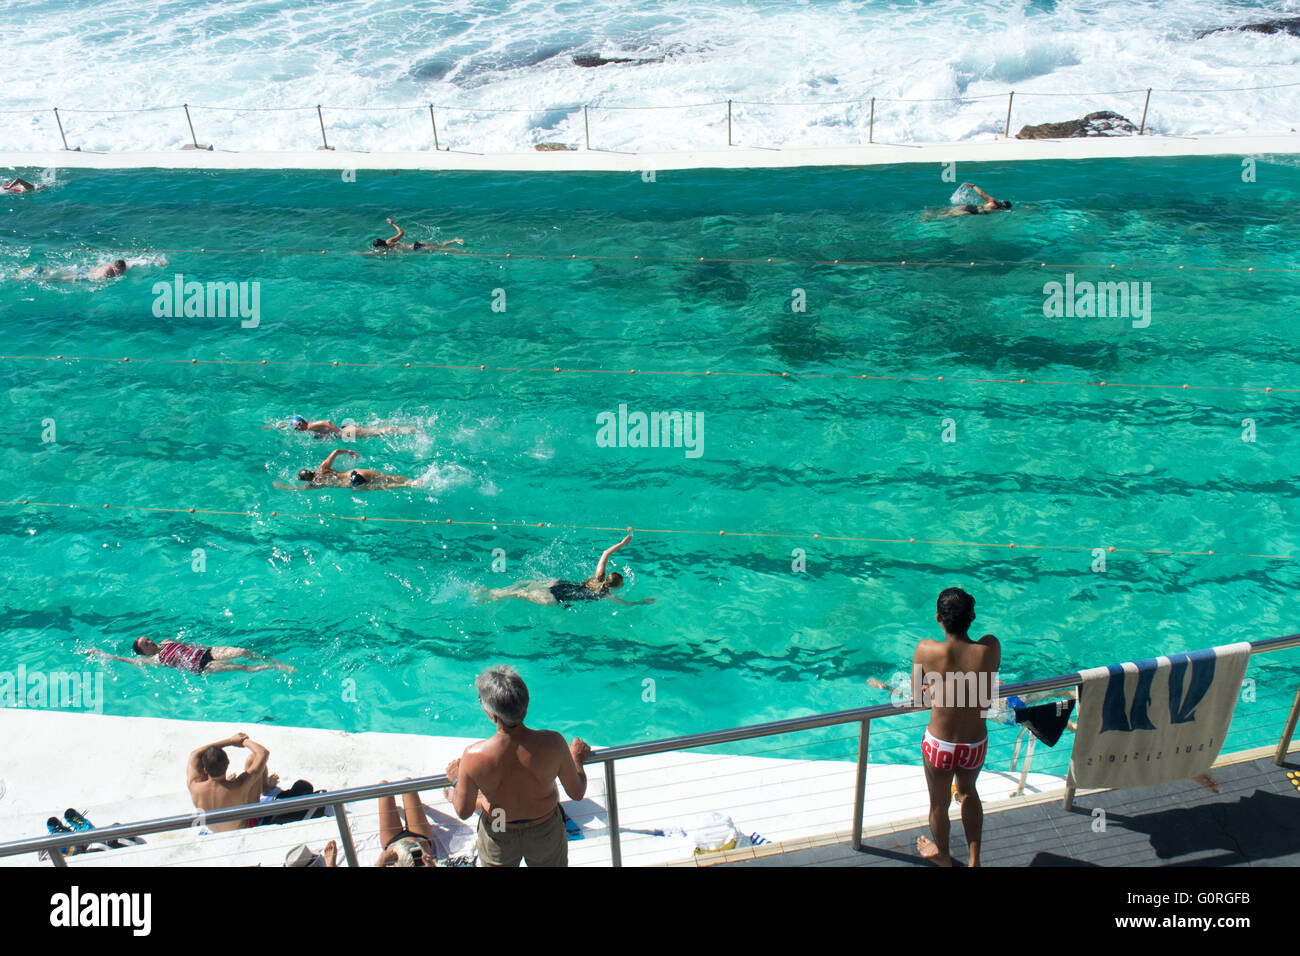 La natation de personnes dans la piscine à Bondi Icebergs de Bondi Beach. Banque D'Images